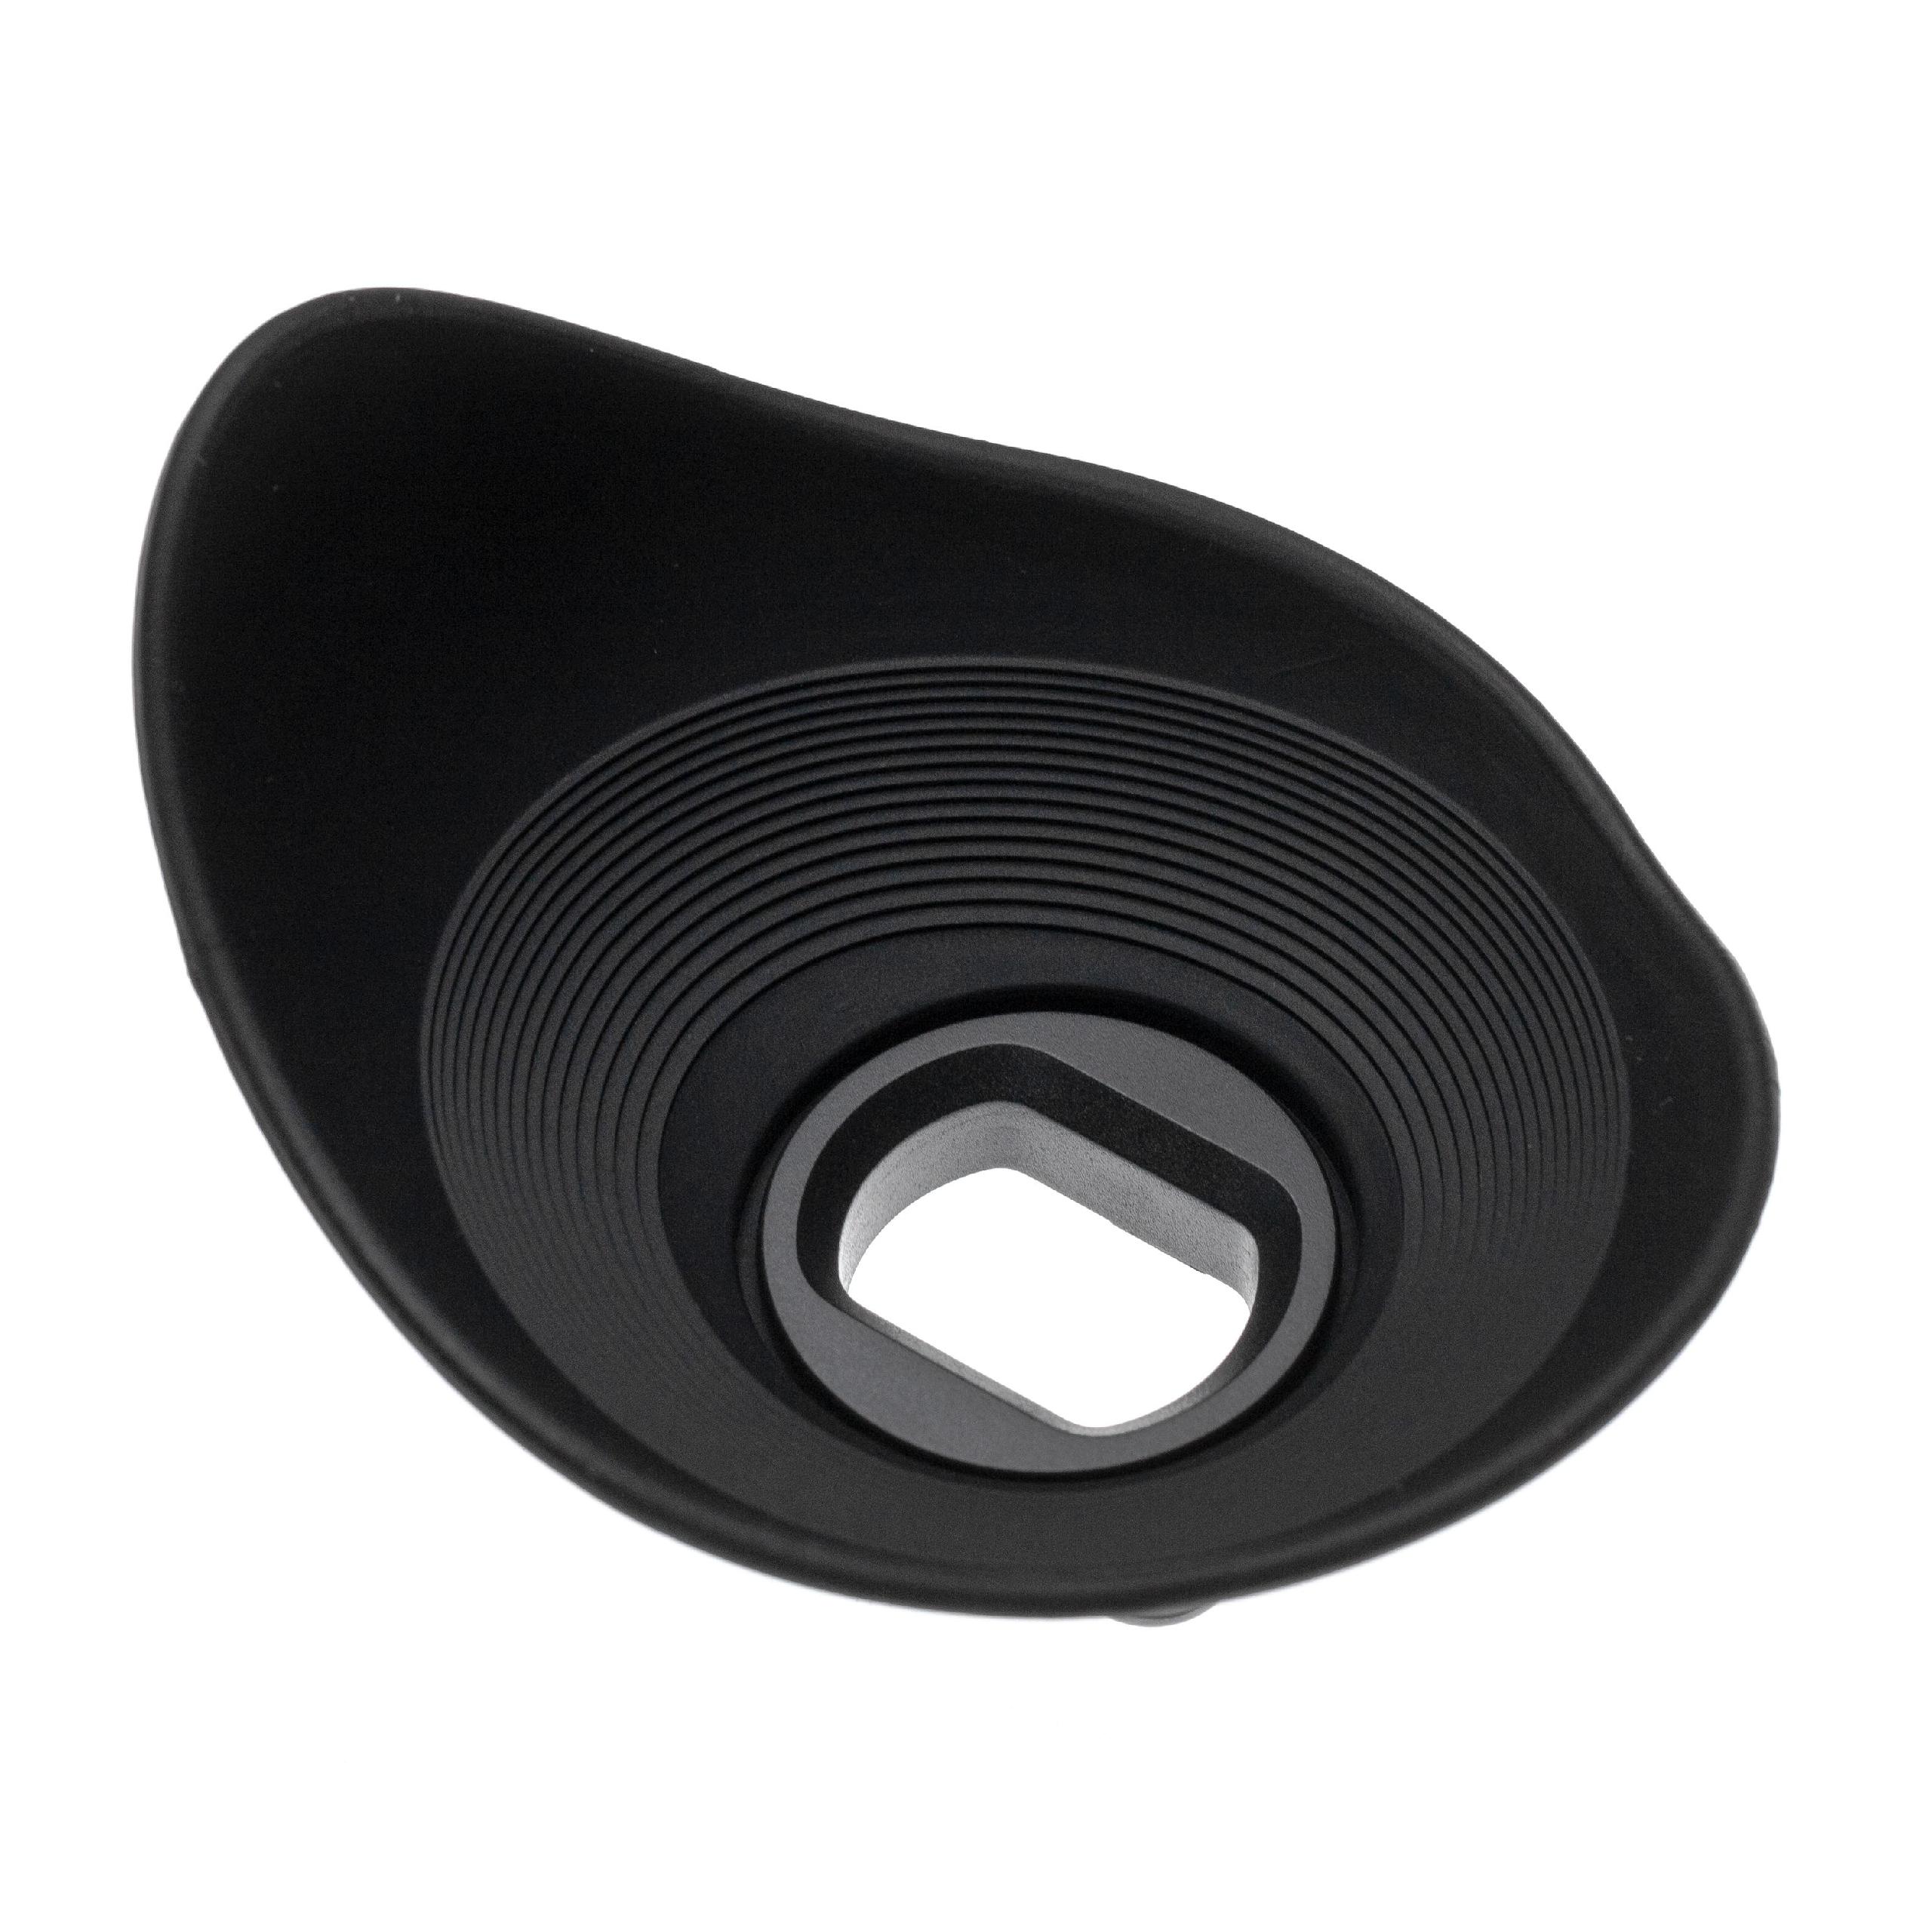 Augenmuschel Sucher als Ersatz für Sony FDA-EP10 für Sony A6000 u.a., 360° drehbar, Kunststoff, Gummi